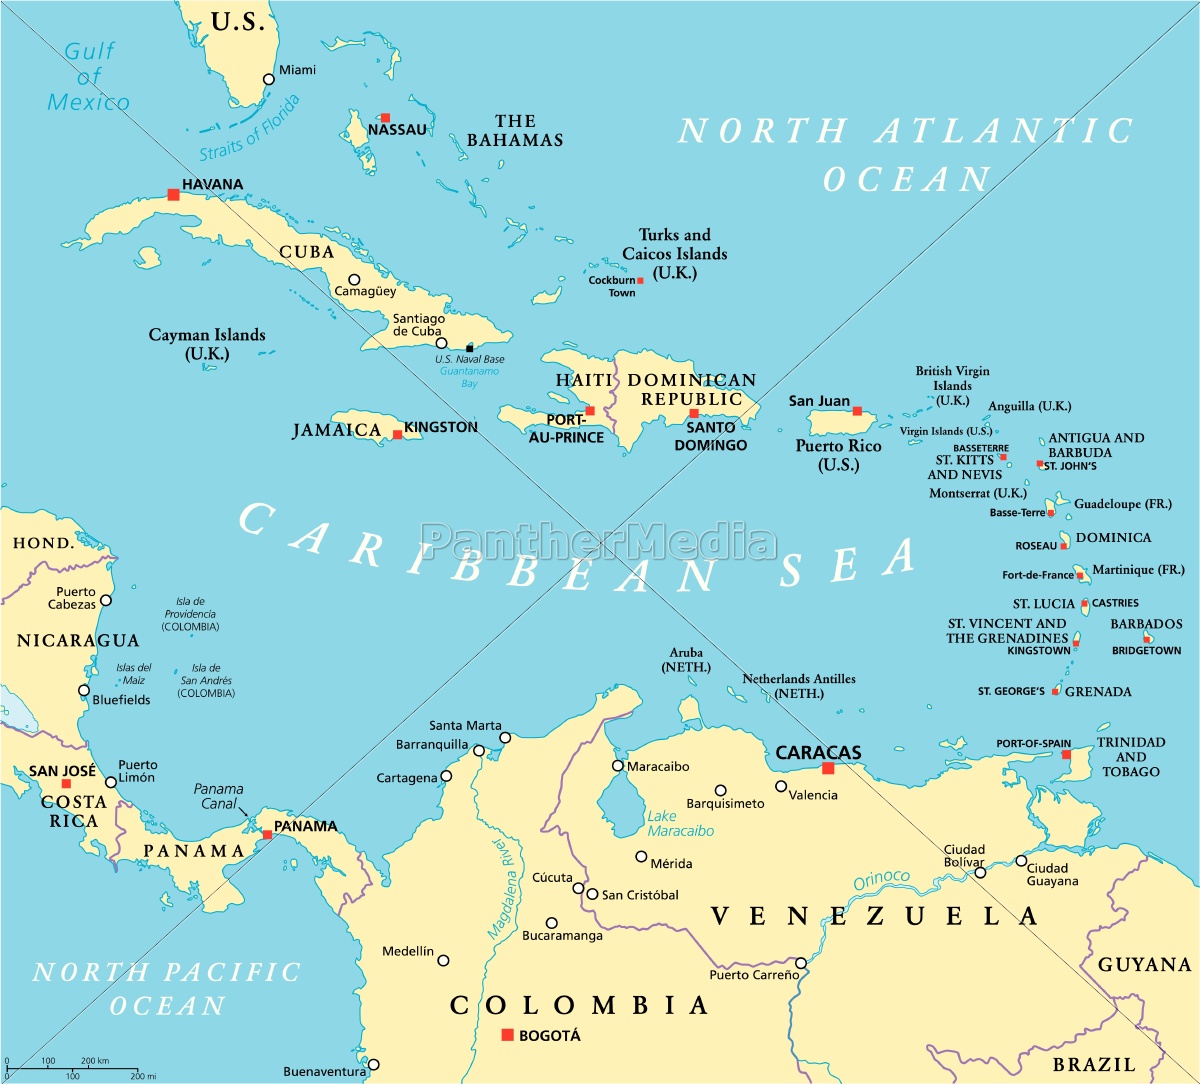 Kort Over Caribbean caribbean politisk kort   Stockphoto   #14334939   PantherMedia  Kort Over Caribbean